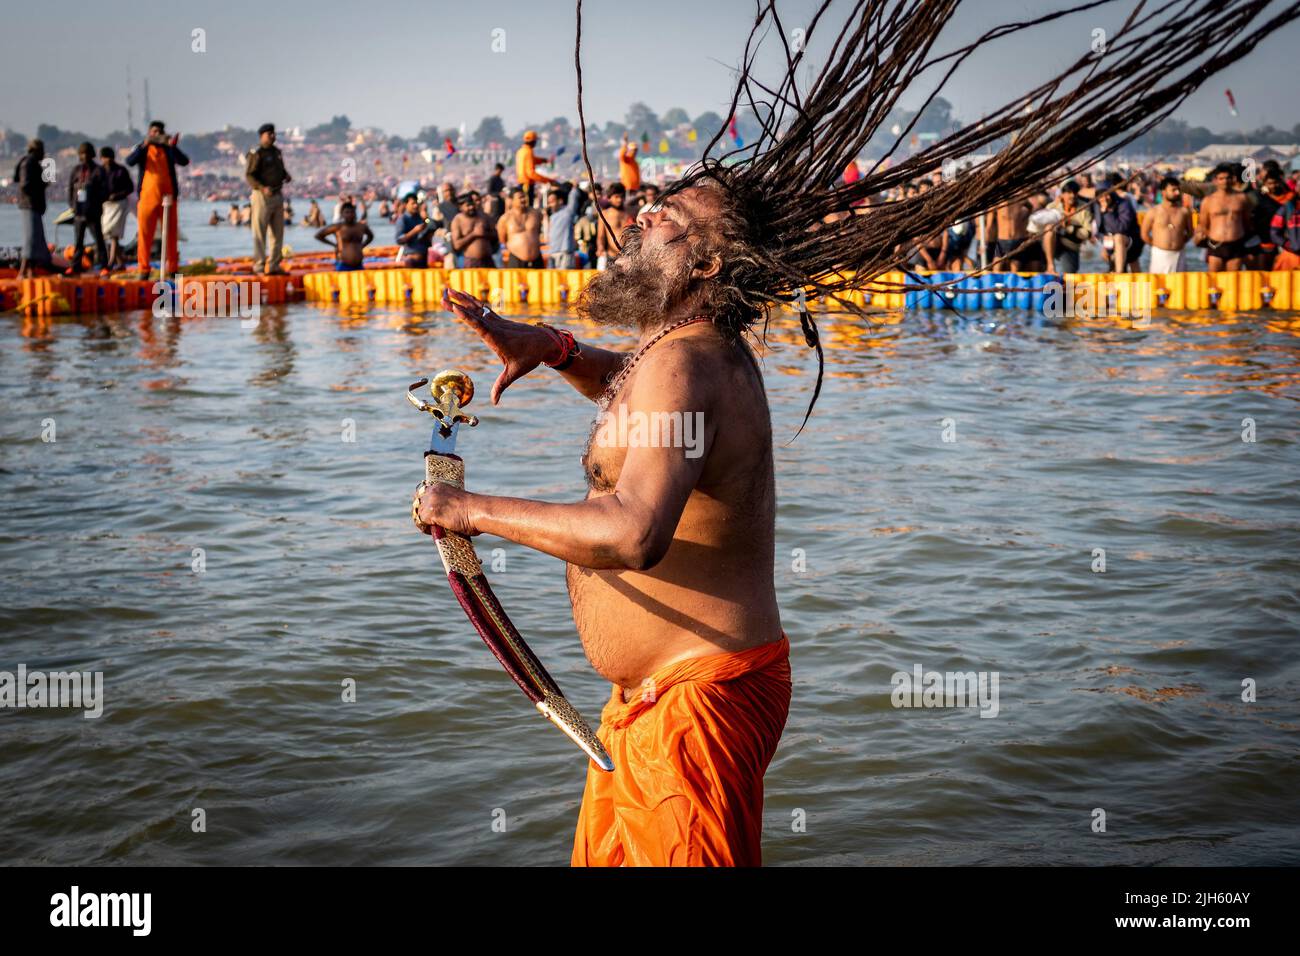 Un hombre hindú con largas temidas y llevando una espada se baña en el Triveni Sangam en el Kumbh Mela Festival en Allahabad (Prayagraj), India. Foto de stock